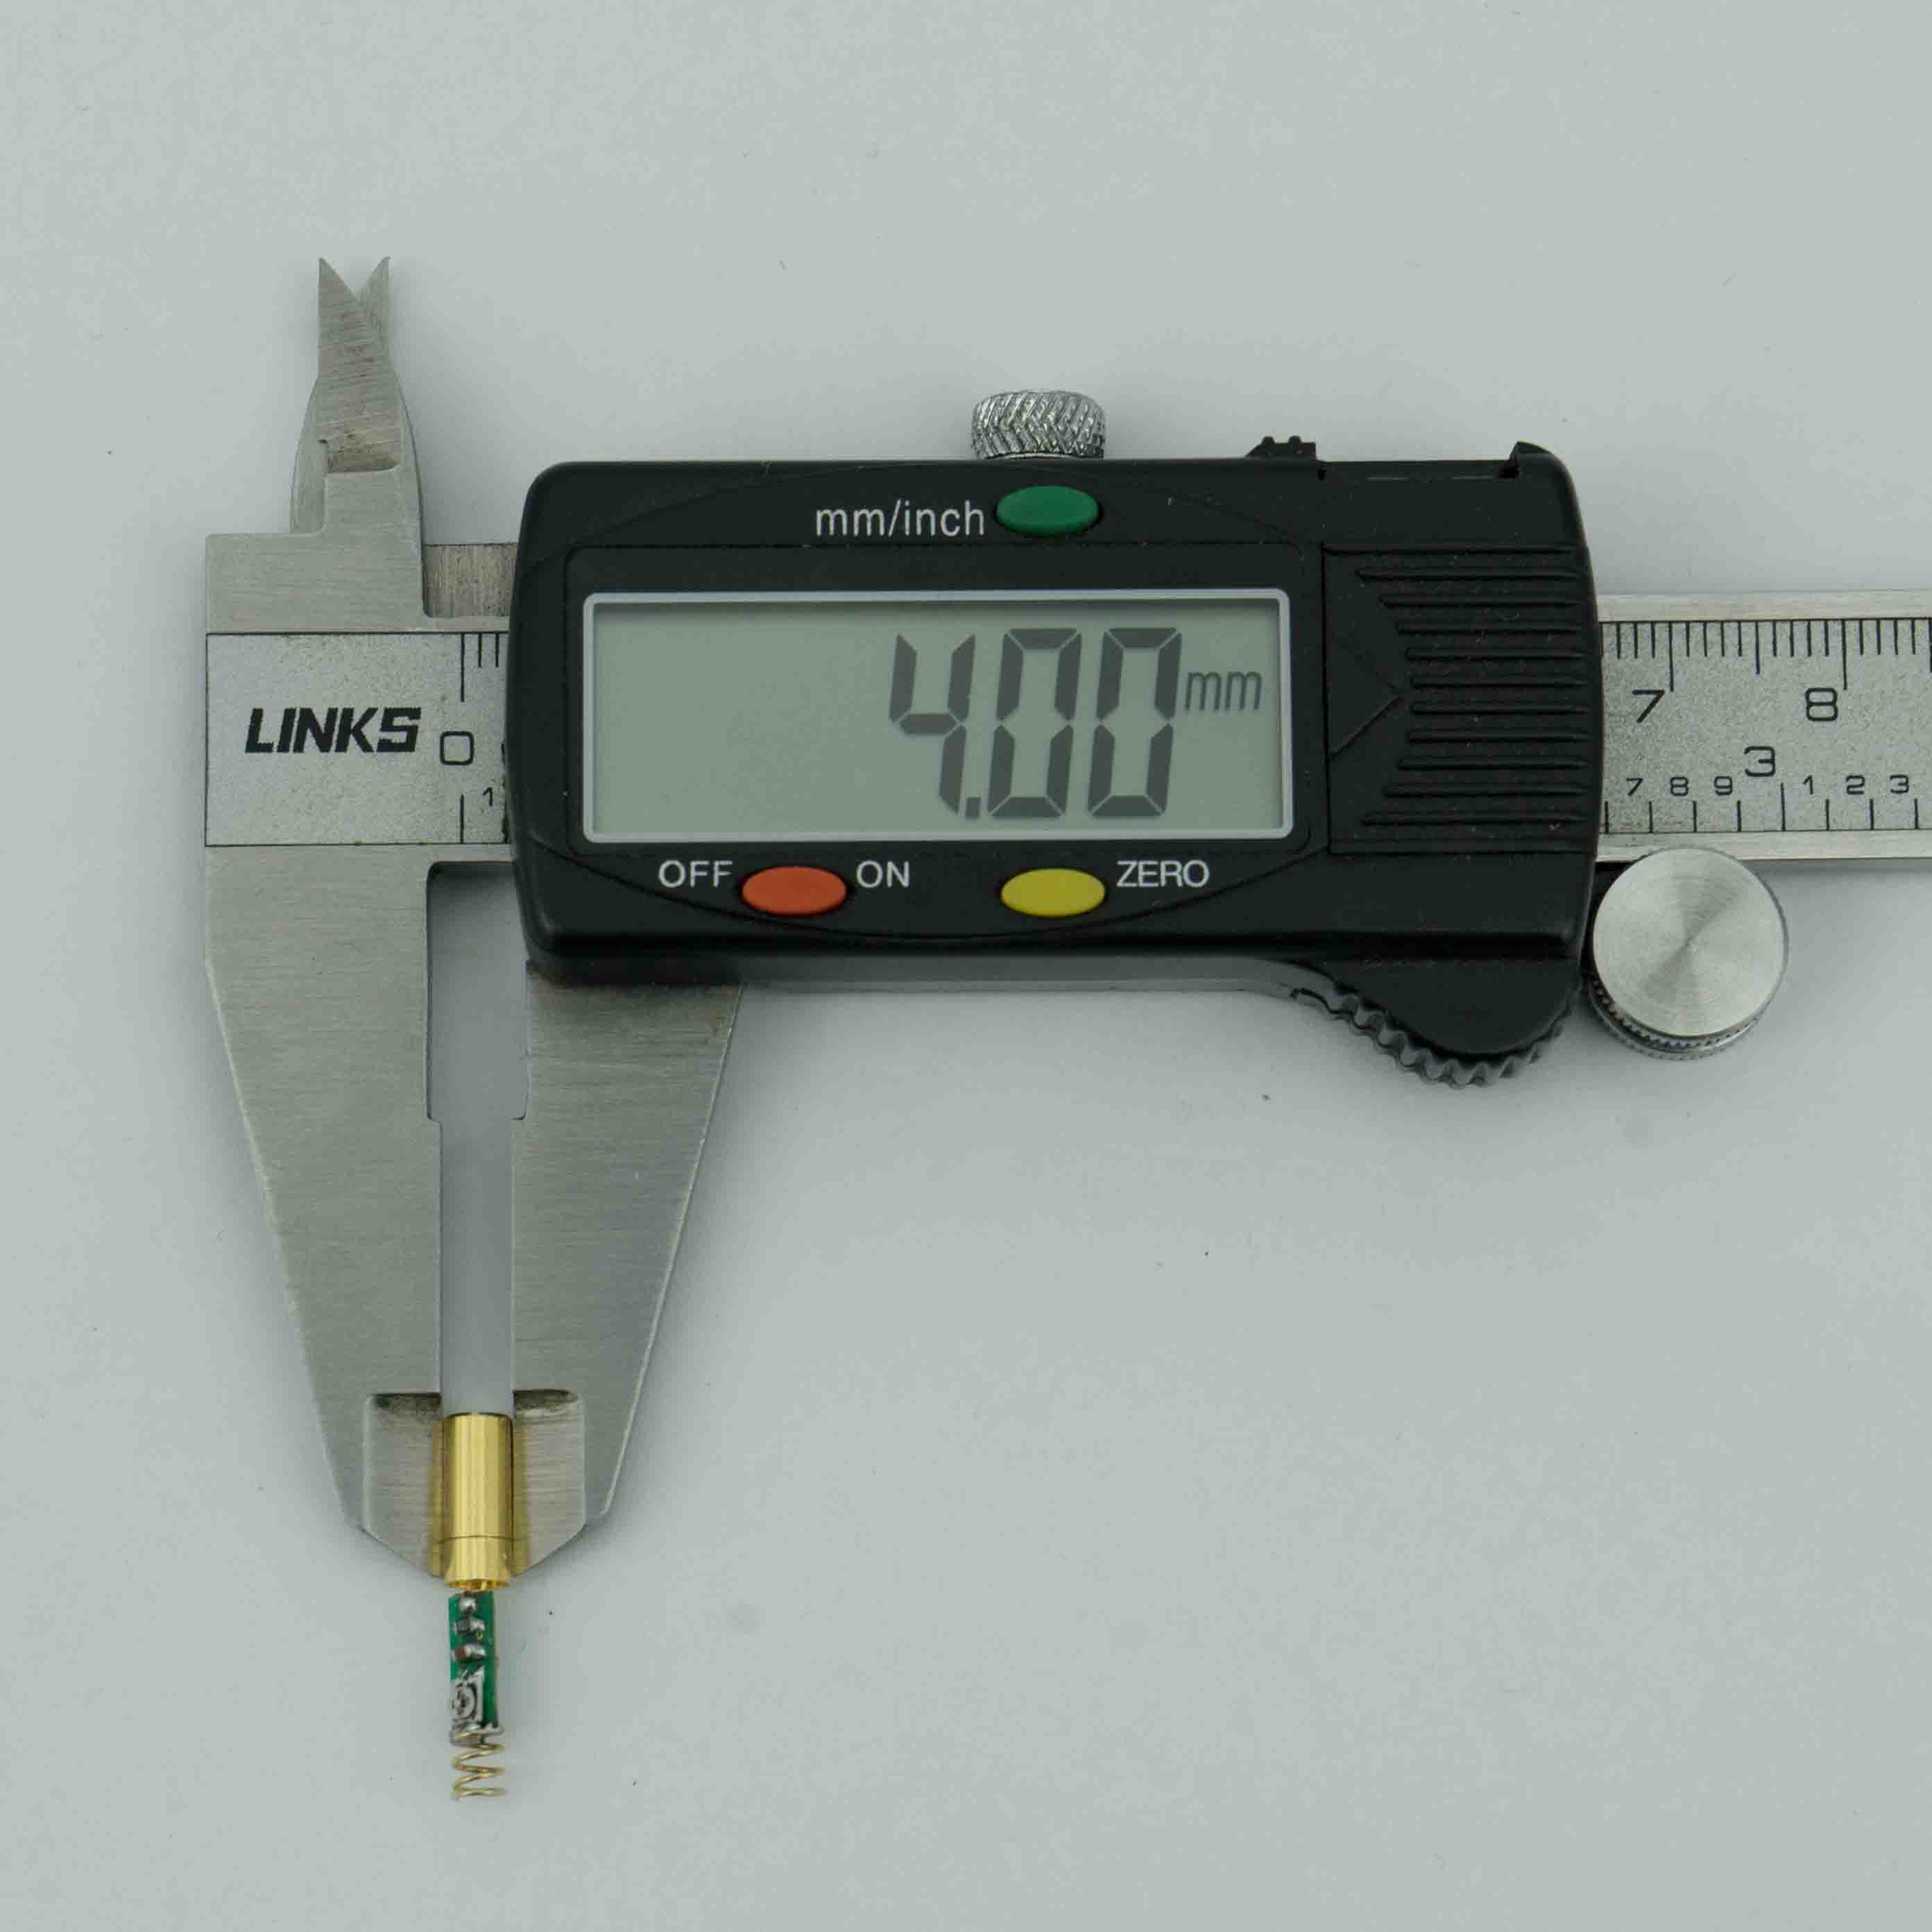 Miniaturlaser Φ4mm 520nm 5mW Green Dot Lasermodul für Laserzielgeräte Pistolenlasergriffe